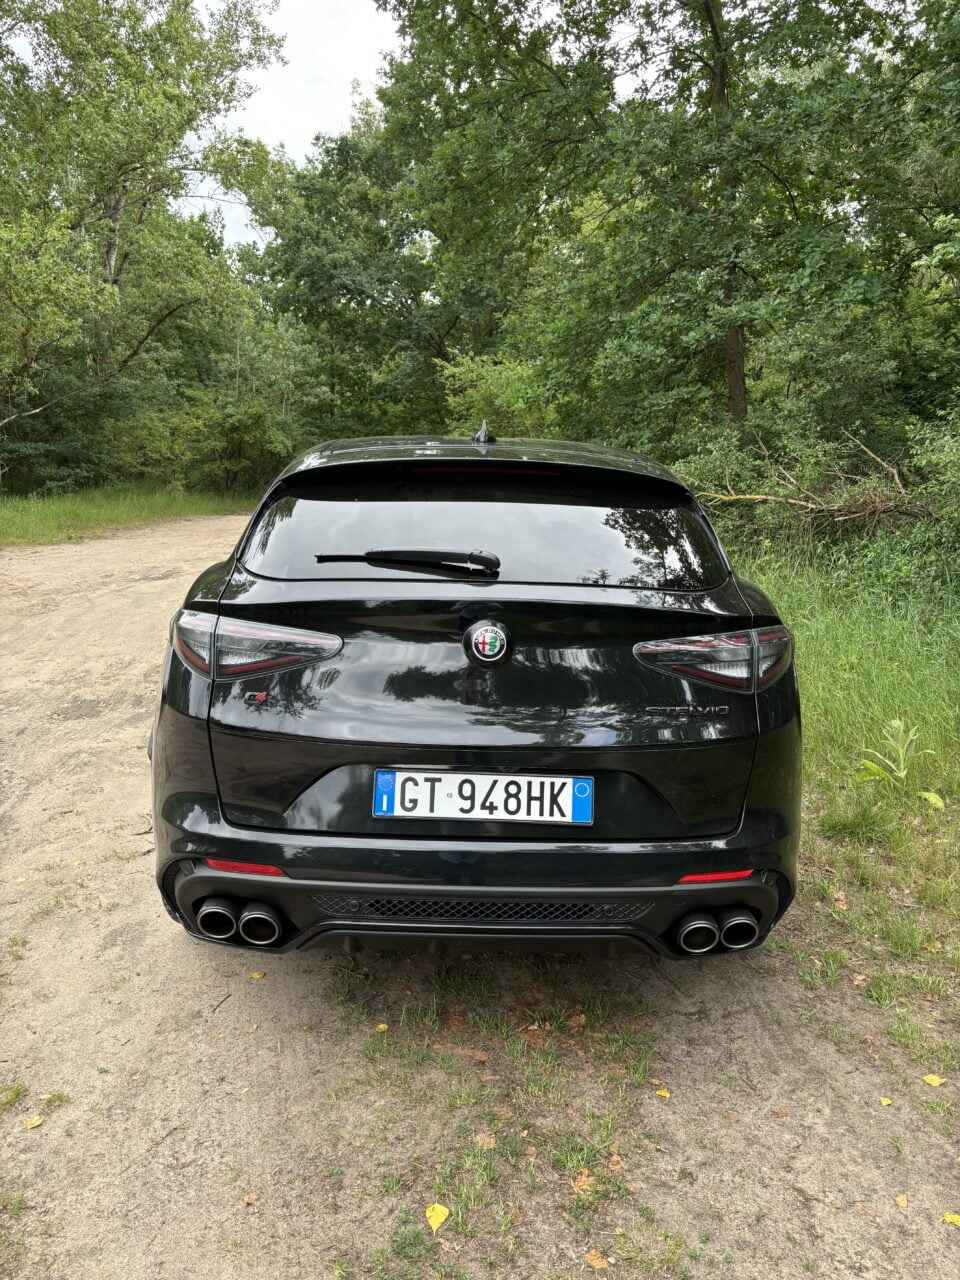 Czarny samochód marki Alfa Romeo Giulia Quadrifoglio, zaparkowany na leśnej drodze, widok od tyłu.